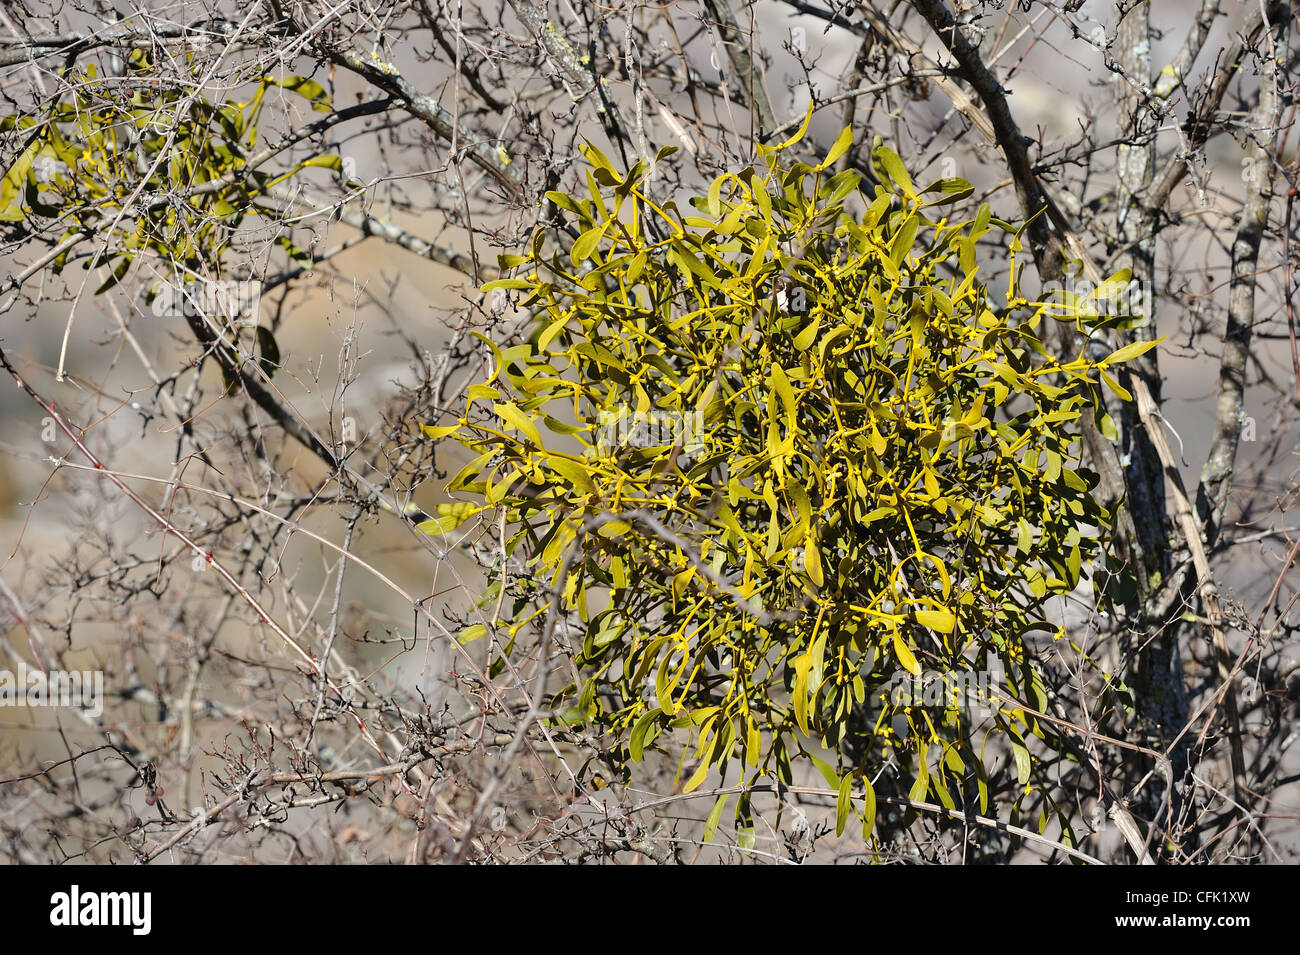 Europäische Mistel (Viscum Album) Hemi-parasitäre Strauch wächst auf Zweigen von einer Pappel im winter Stockfoto